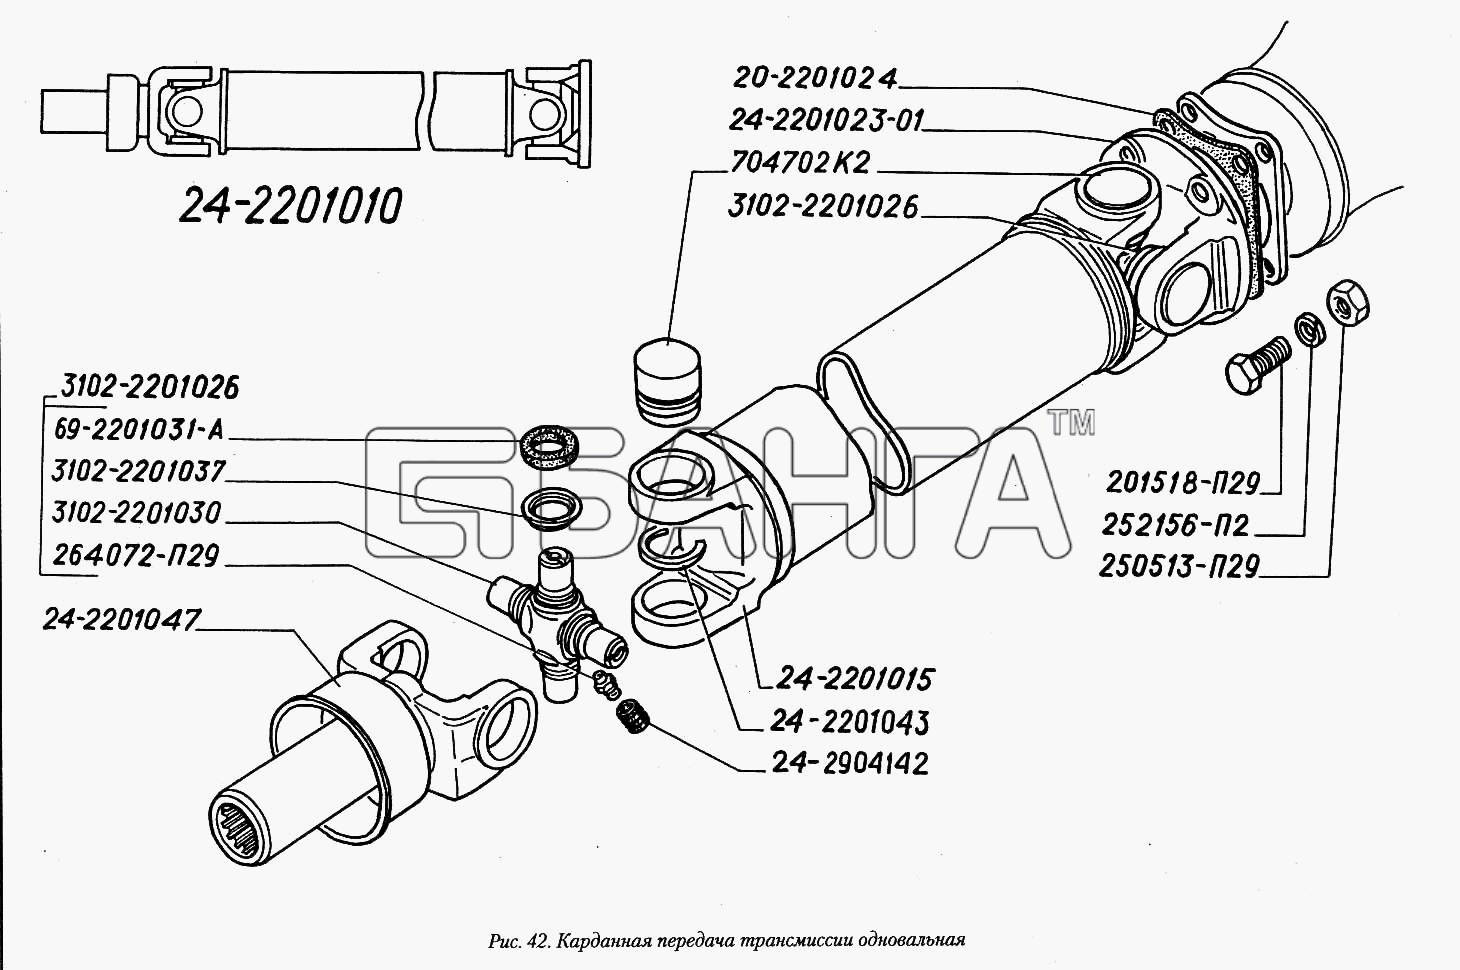 ГАЗ ГАЗ-3110 Схема Карданная передача трансмиссии banga.ua